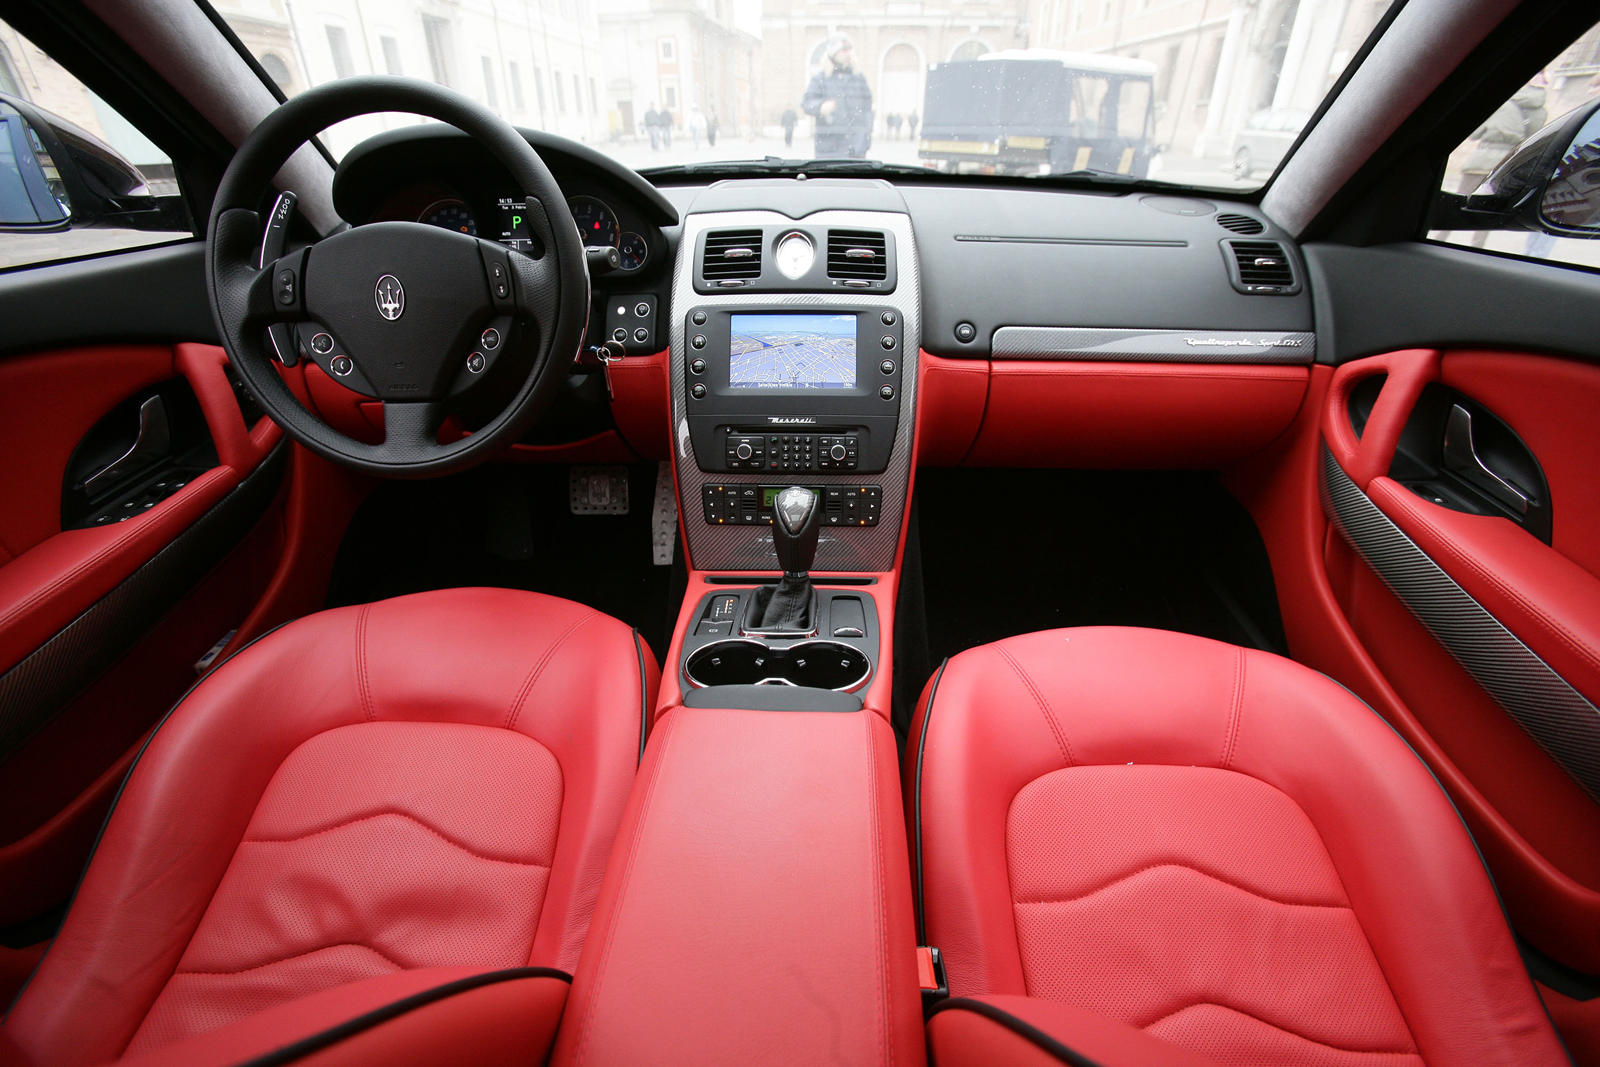 2011 Maserati Quattroporte Dashboard